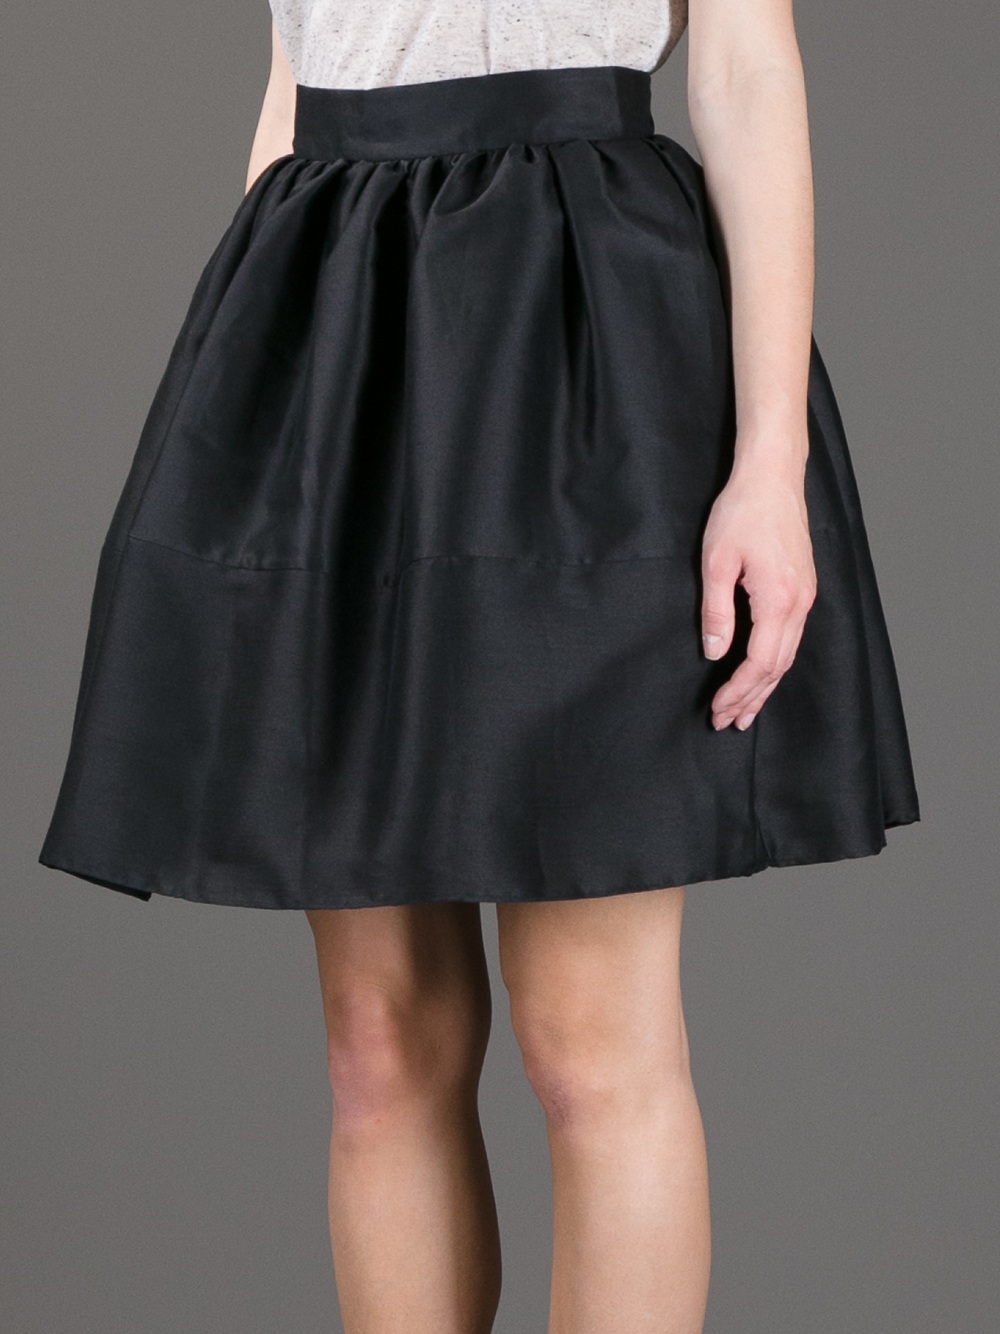 Golden Goose Deluxe Brand Flared Semi Sheer Skirt in Black - Lyst